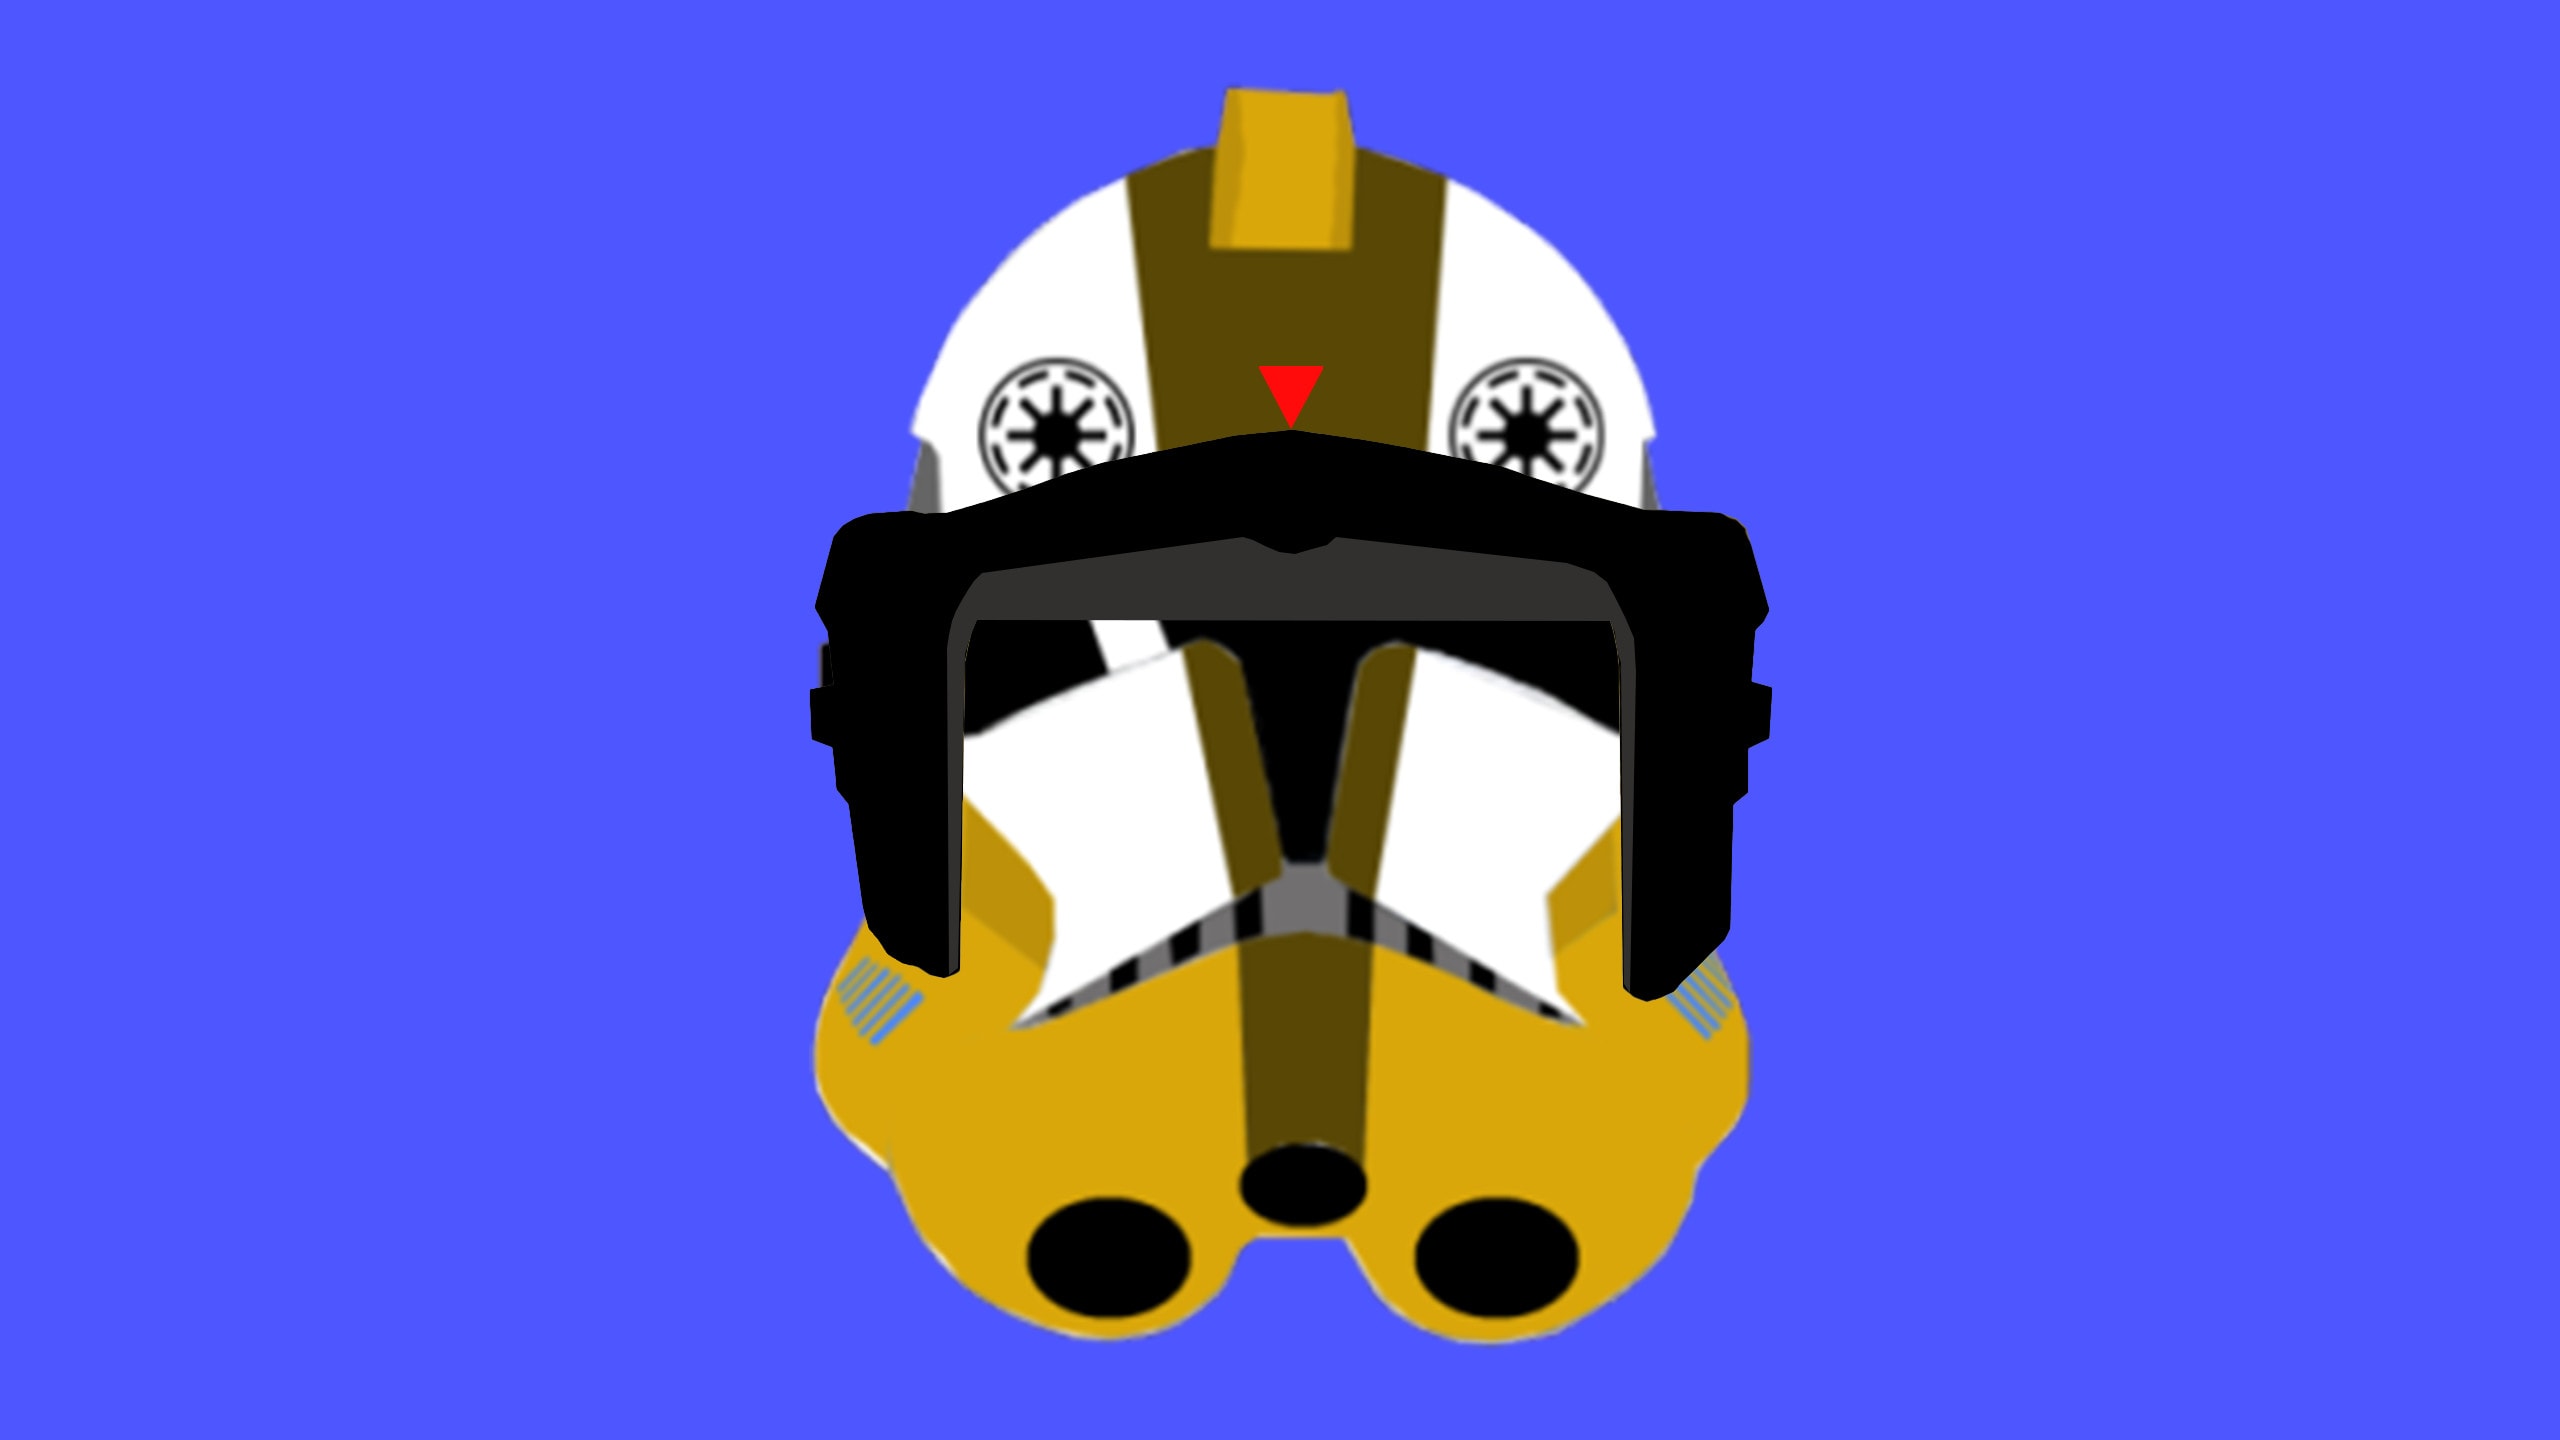 design your own clone trooper helmet